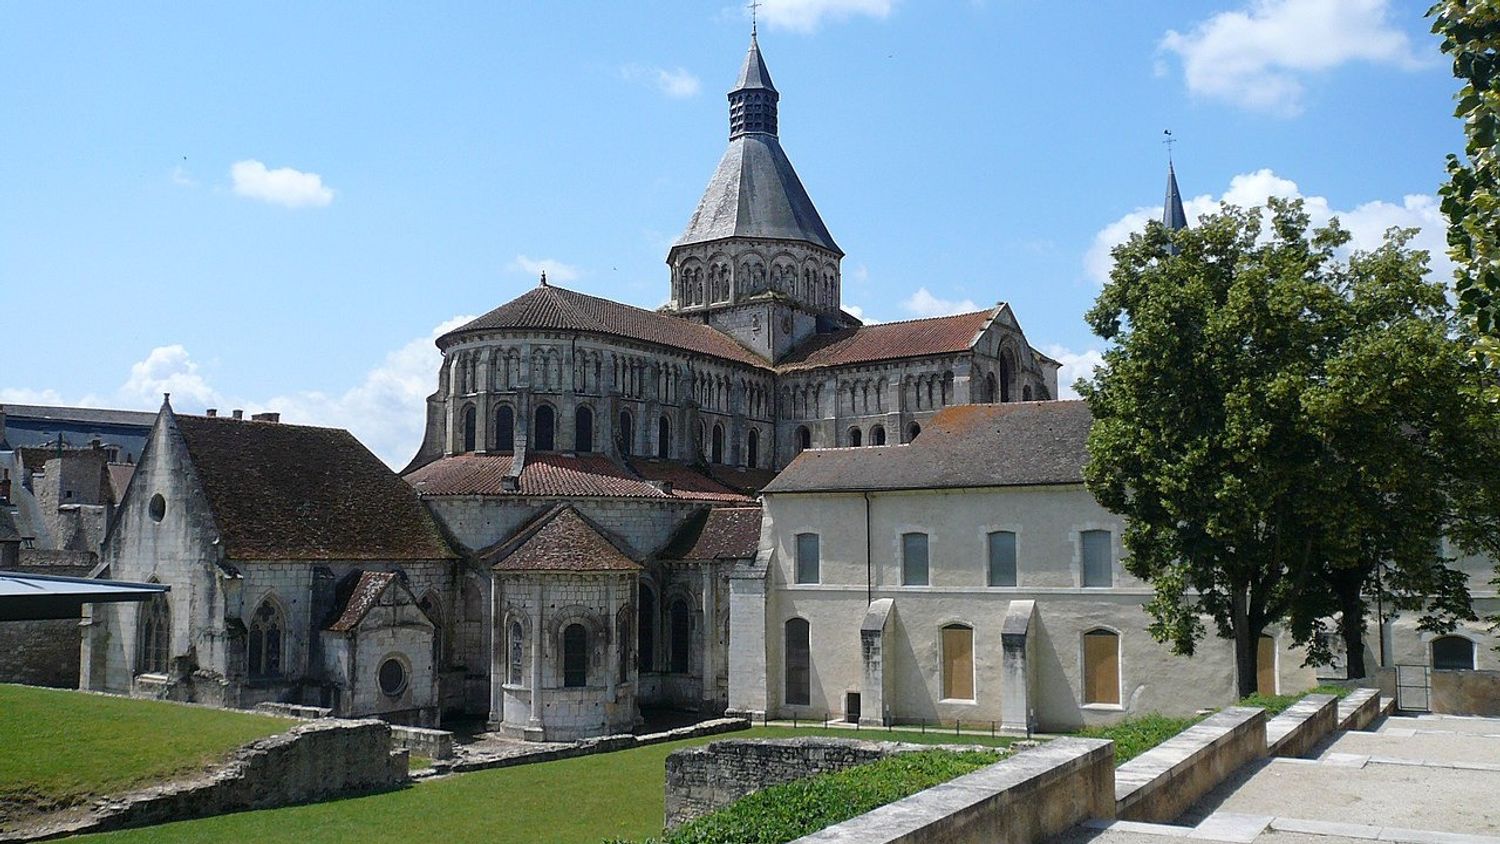 Vue du chevet du Prieuré de la Charité-sur-Loire, Nièvre, Bourgogne, France.